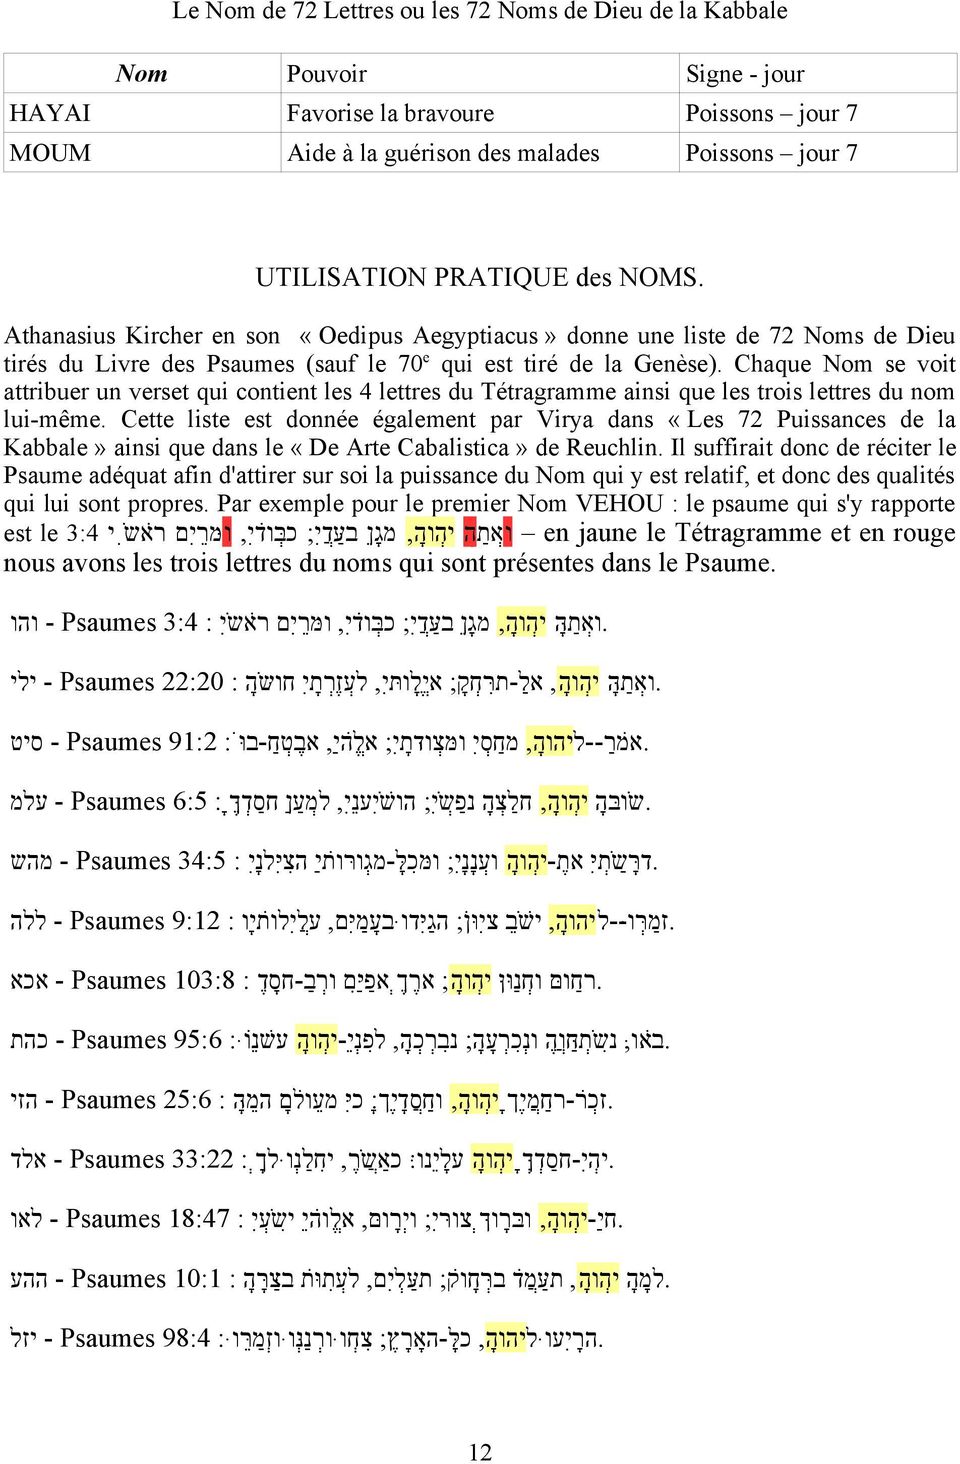 Chaque Nom se voit attribuer un verset qui contient les 4 lettres du Tétragramme ainsi que les trois lettres du nom lui-même.